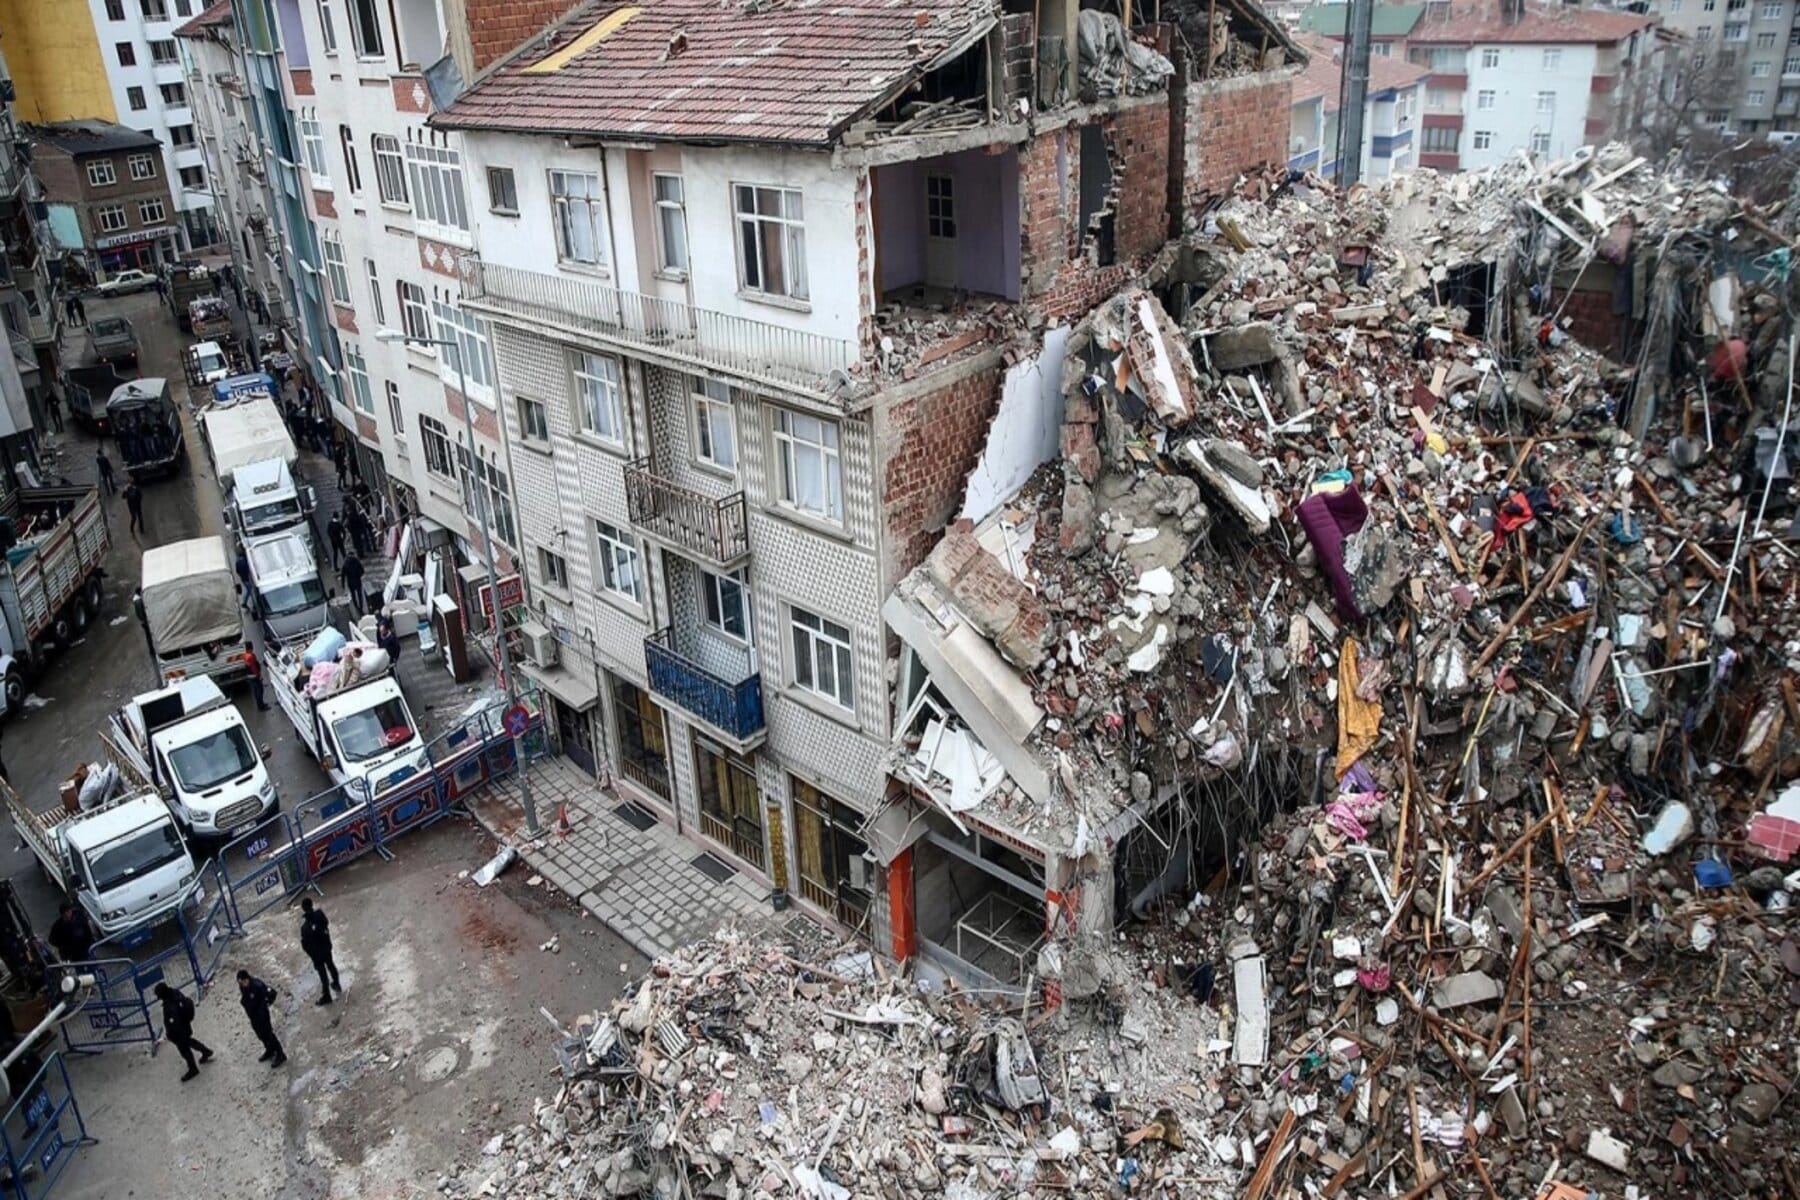  alarabtrend.com ضرب زلزال جديد مناطق وسط تركيا مركزه منطقة يشيل يورت في ولاية ملاطية 